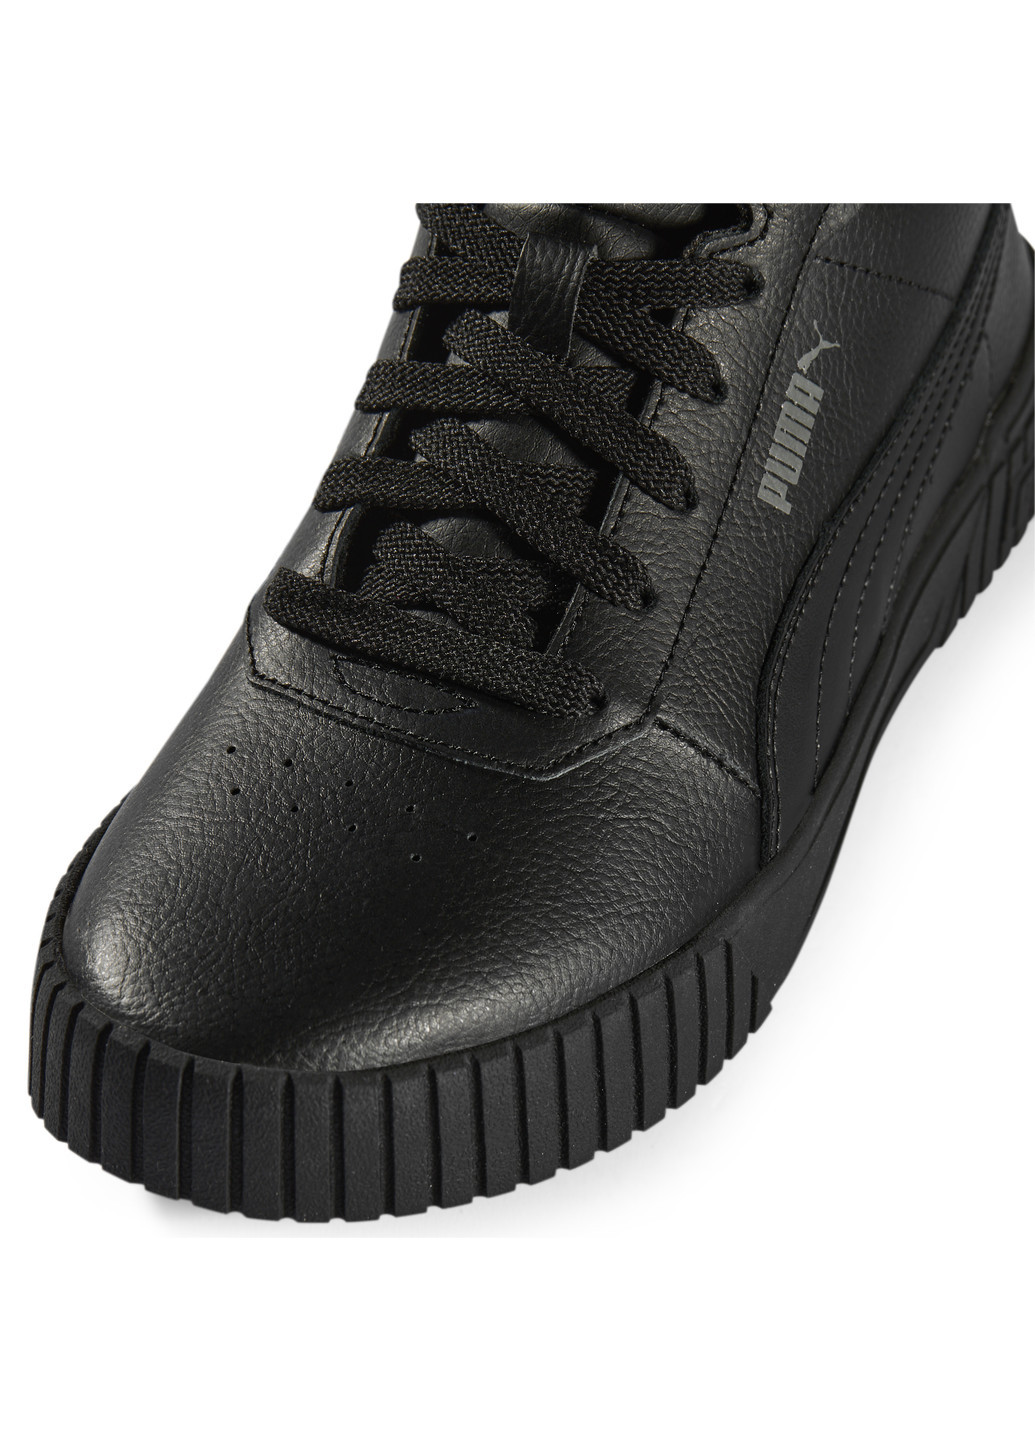 Черные кроссовки carina 2.0 mid sneakers women Puma